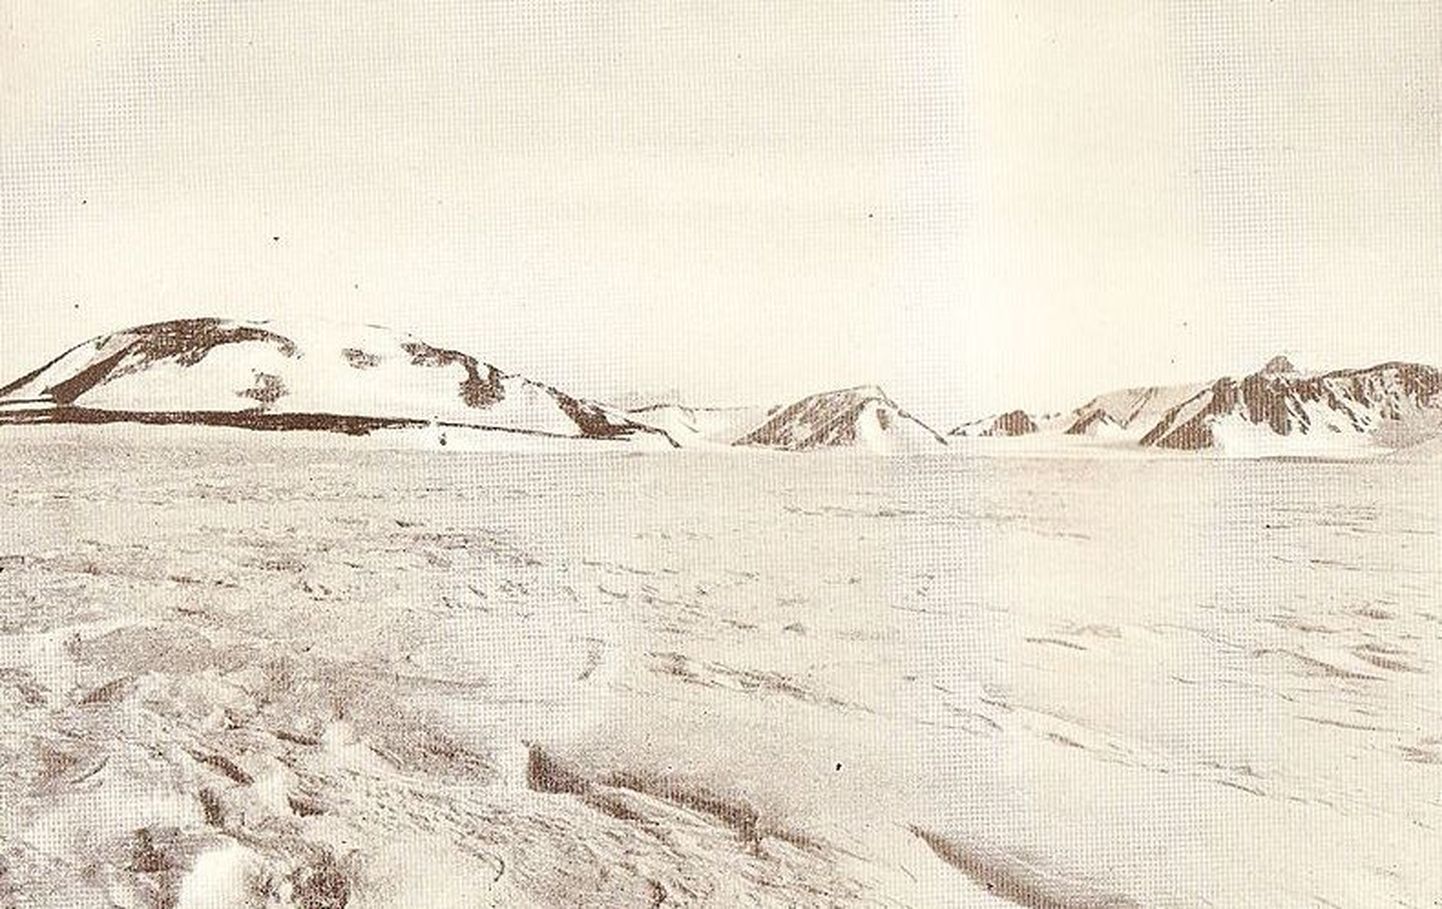 Fotonegatiivid paljastasid sajandi taguse Antarktika ekspeditsiooni